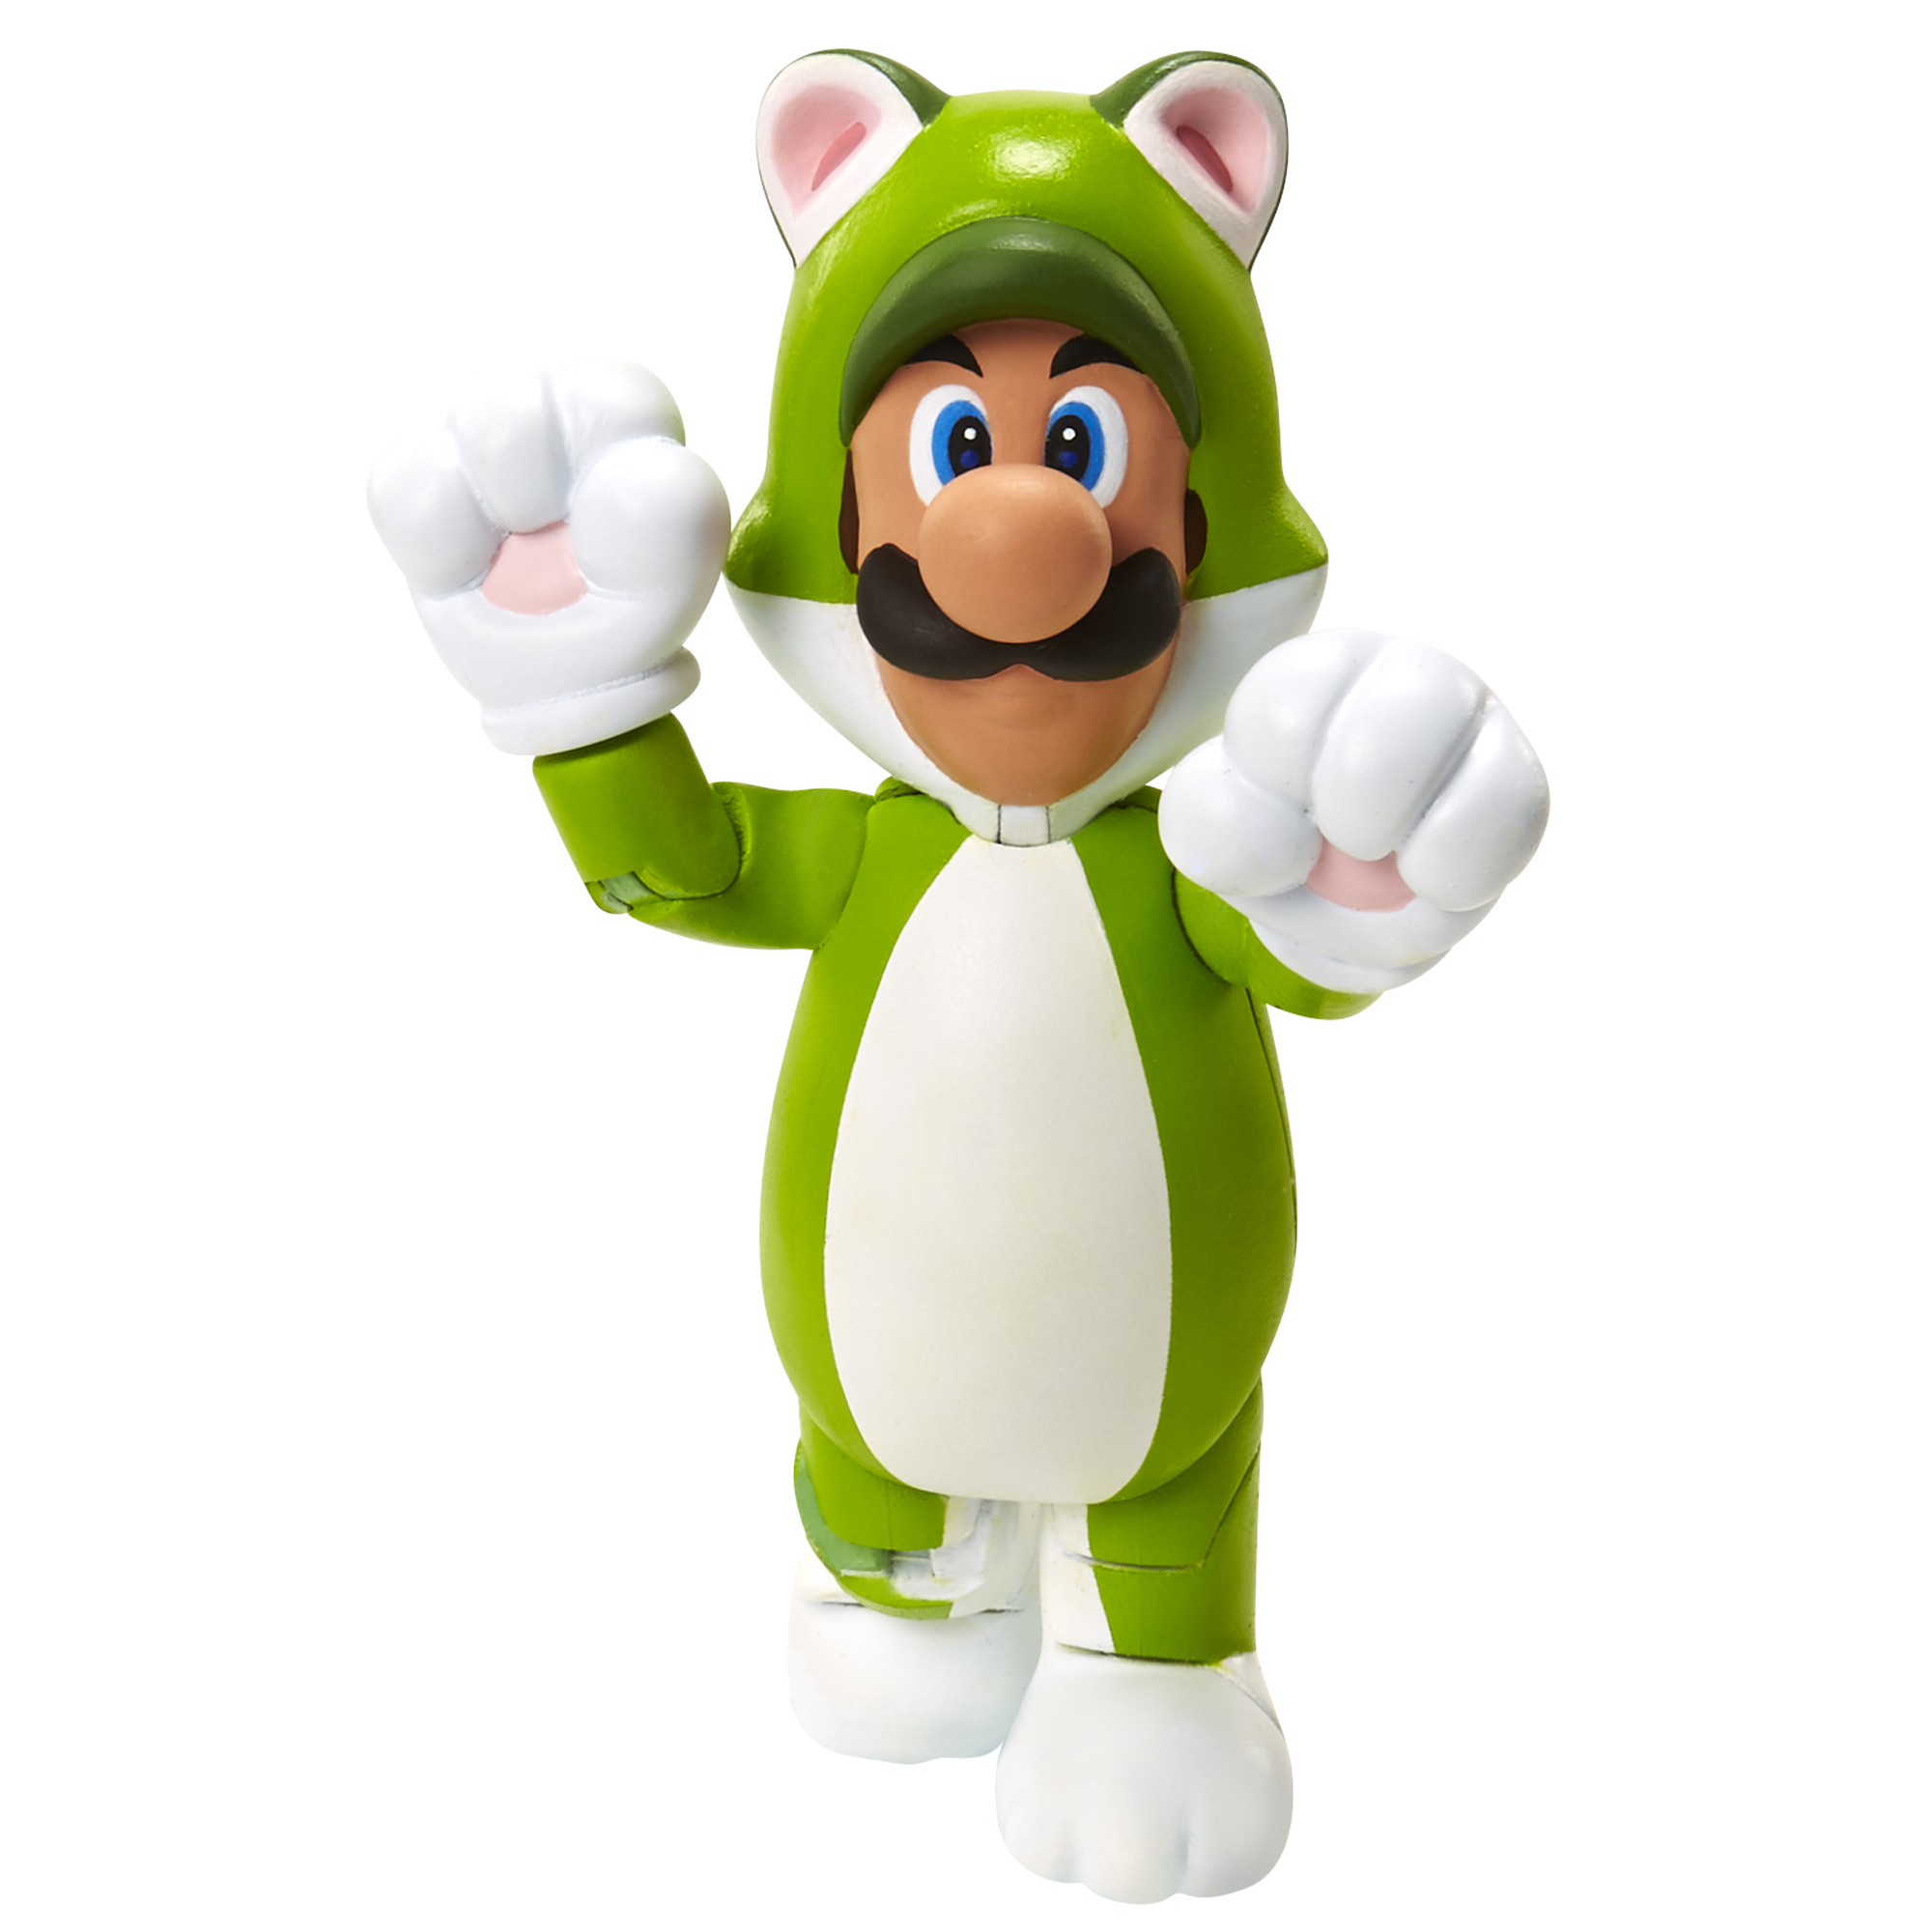 SUPER 10 with Mario Nintendo cm Superball, Super Figur Luigi Spielware Cat MARIO